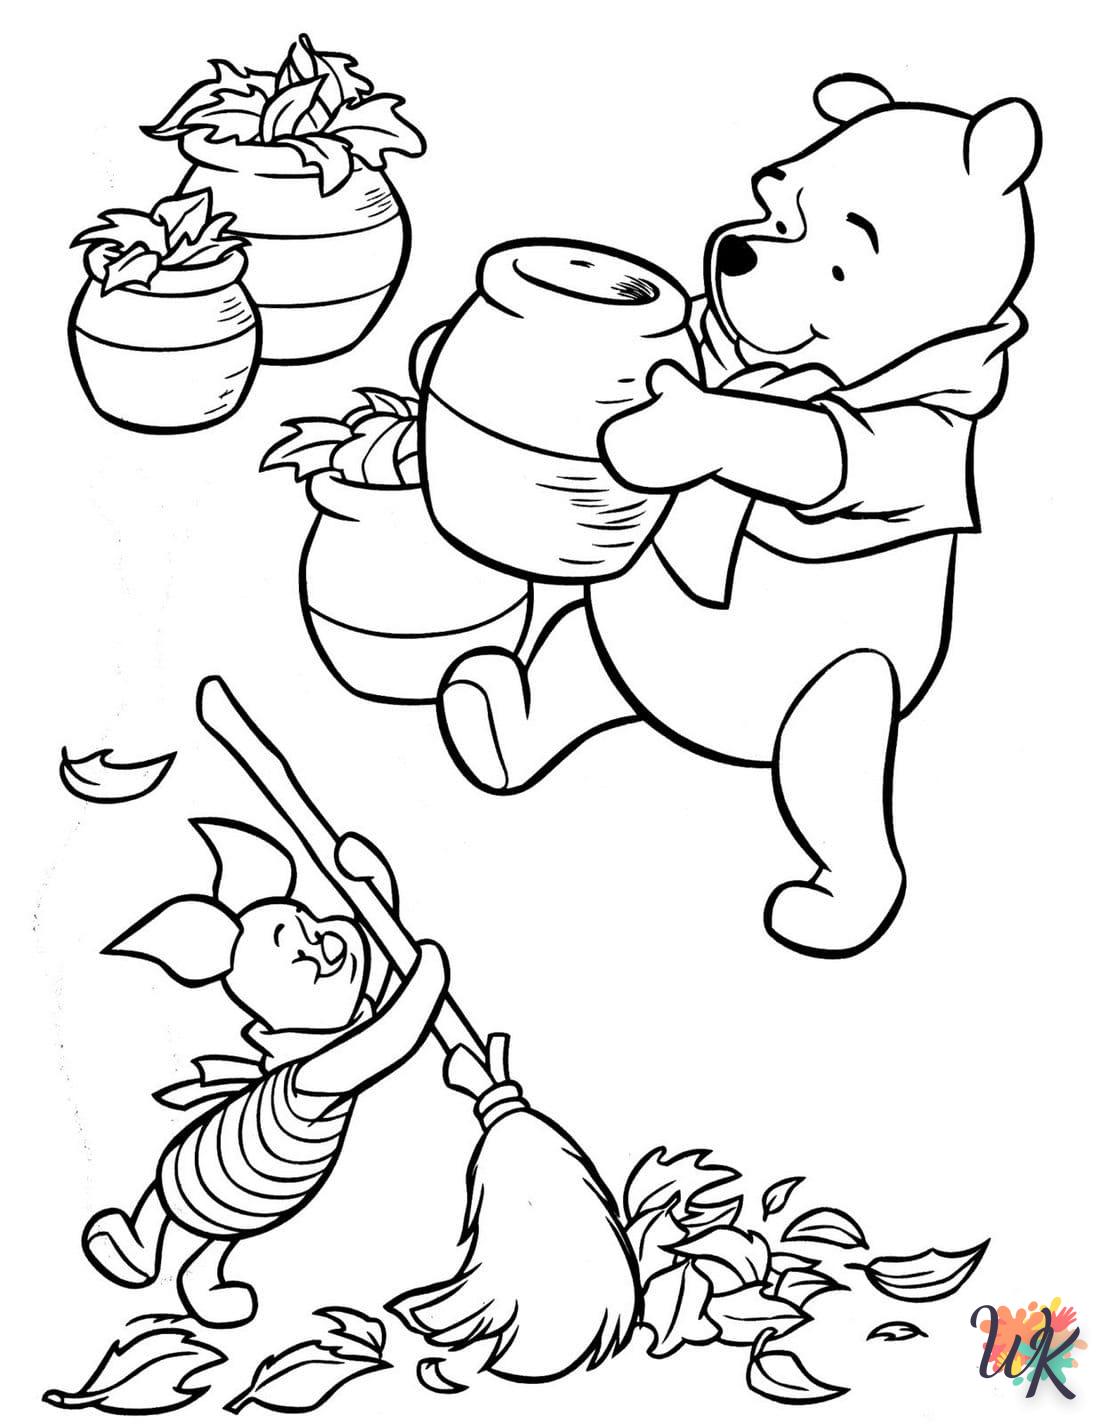 Disegni da Colorare Winnie the Pooh 29